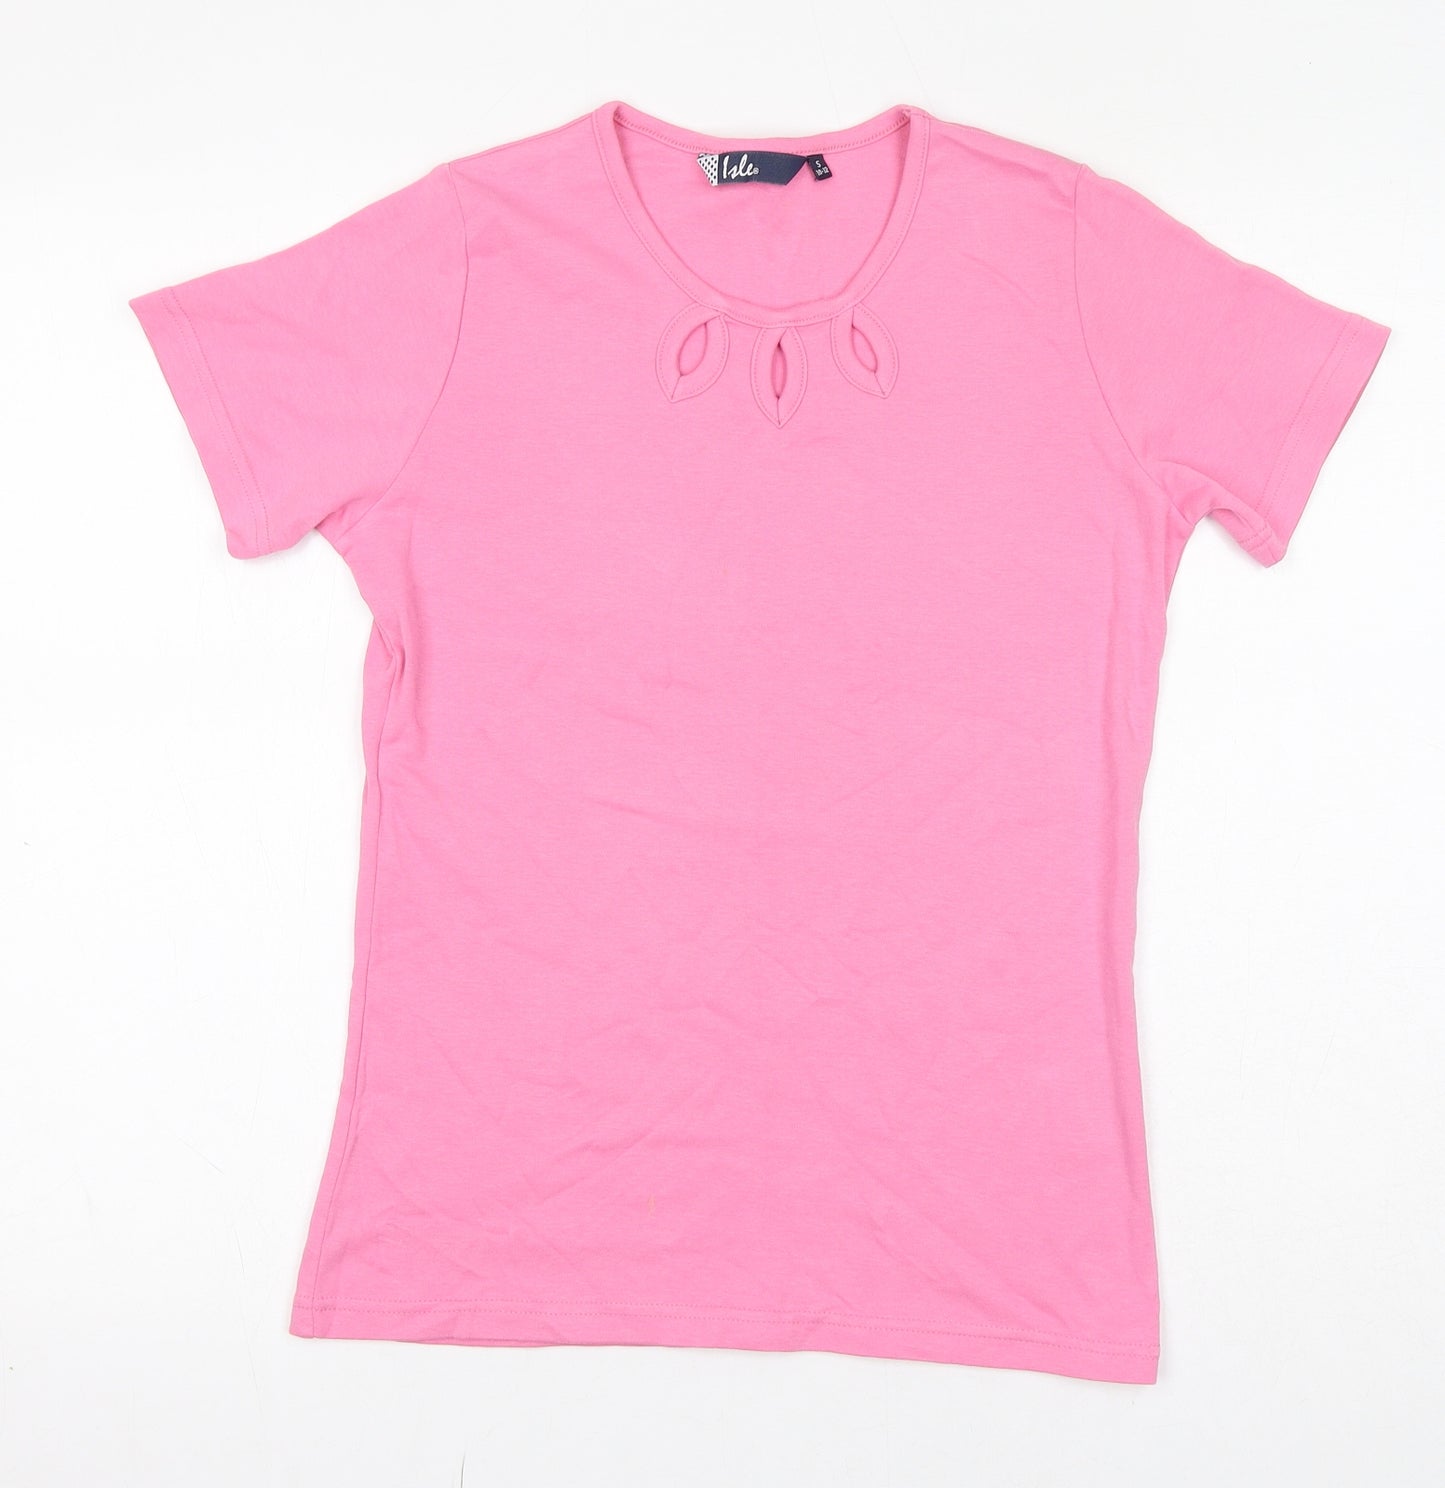 EWM Womens Pink 100% Cotton Basic T-Shirt Size 10 Crew Neck - Size 10-12